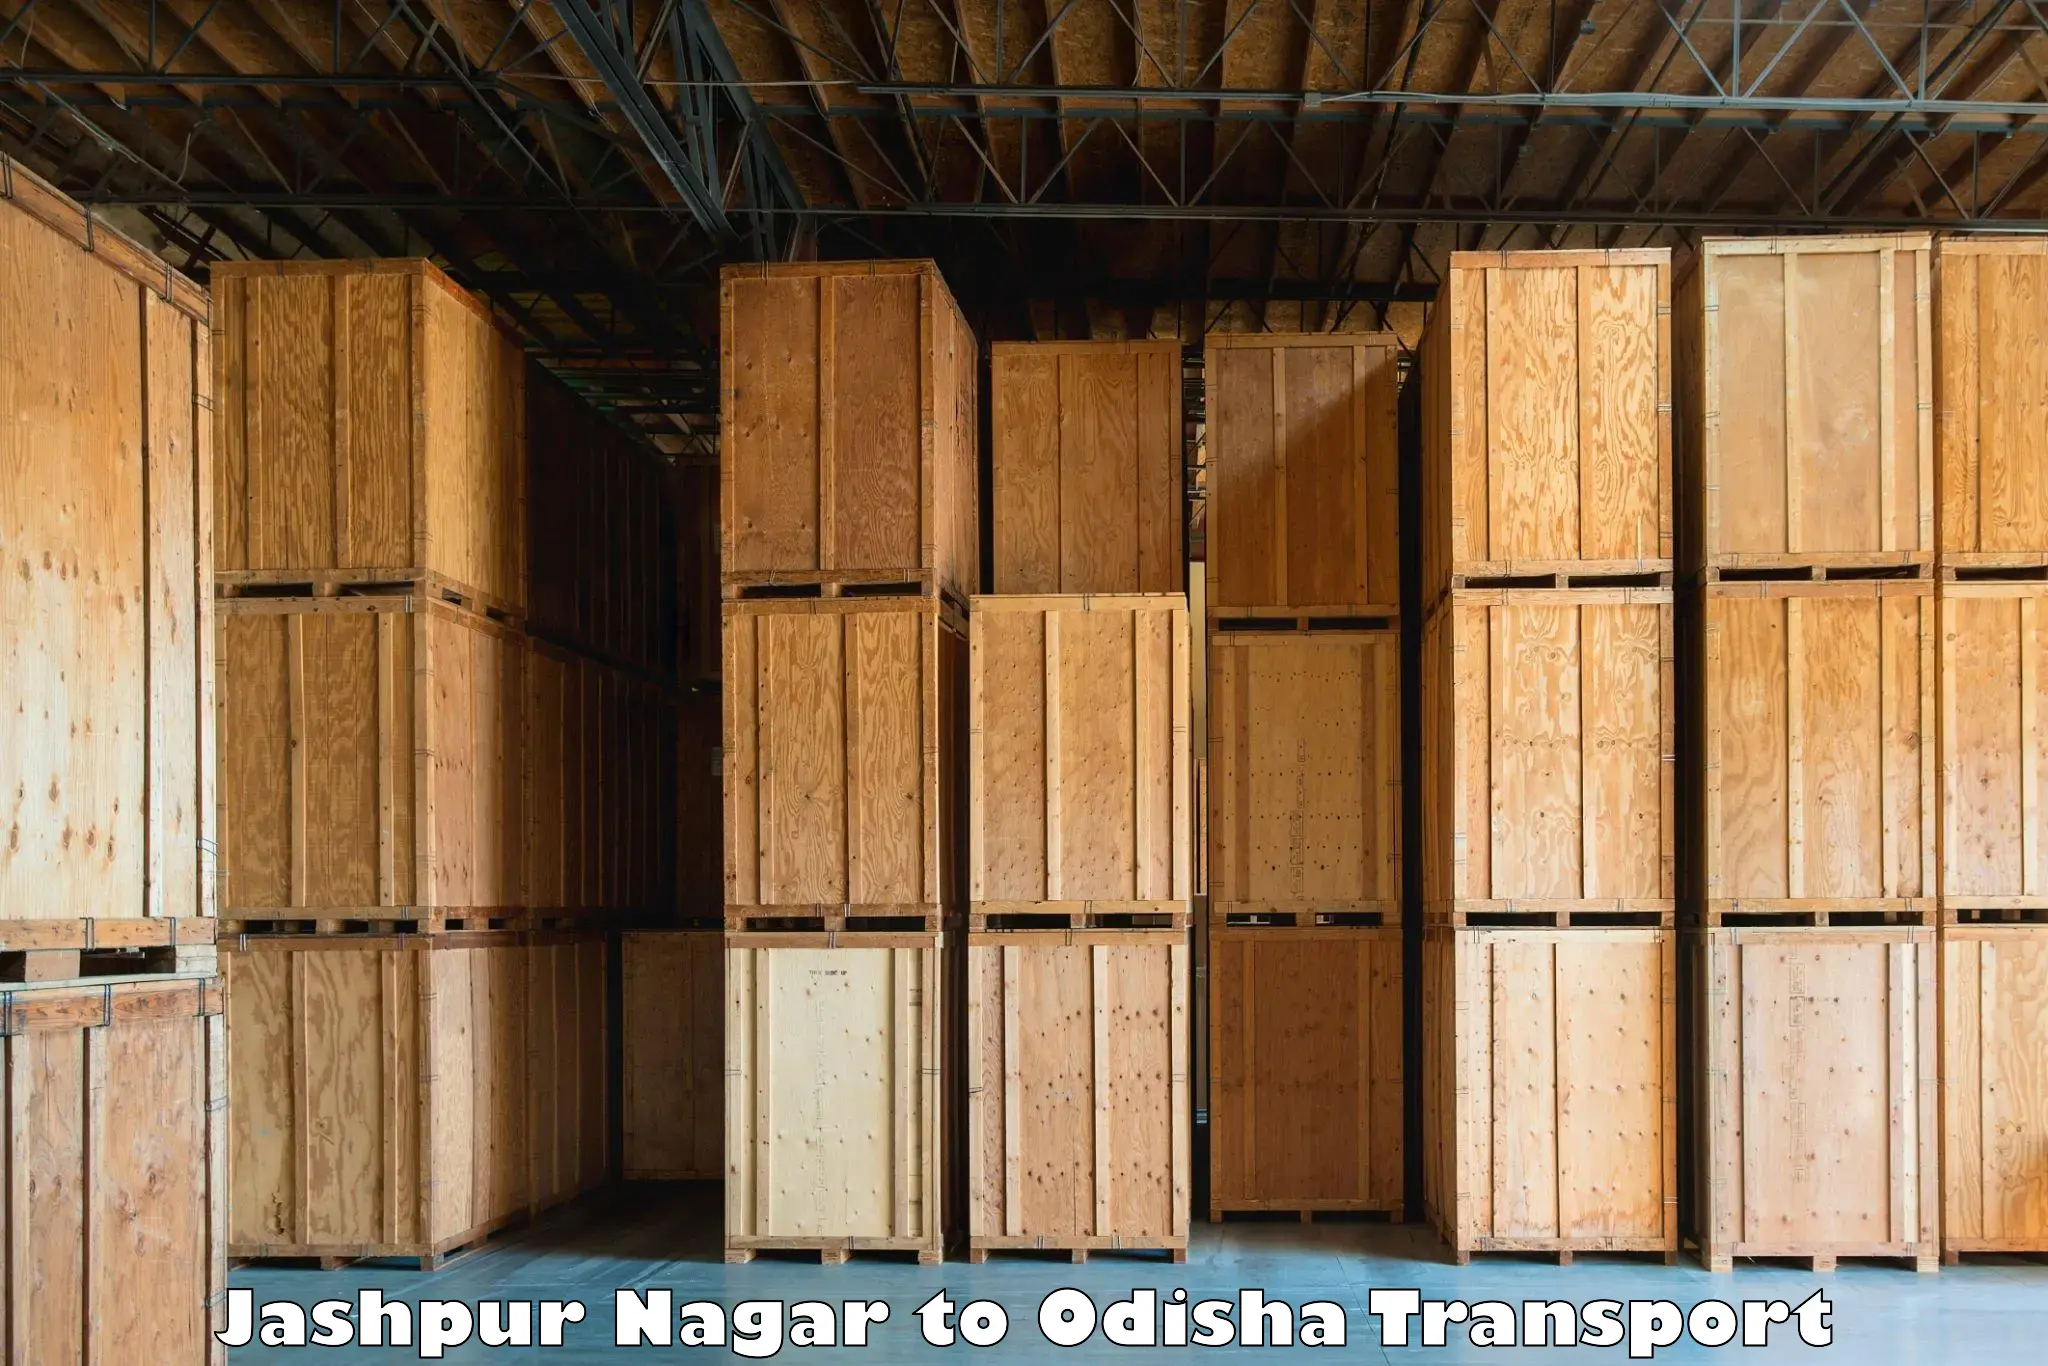 Daily transport service Jashpur Nagar to Boipariguda